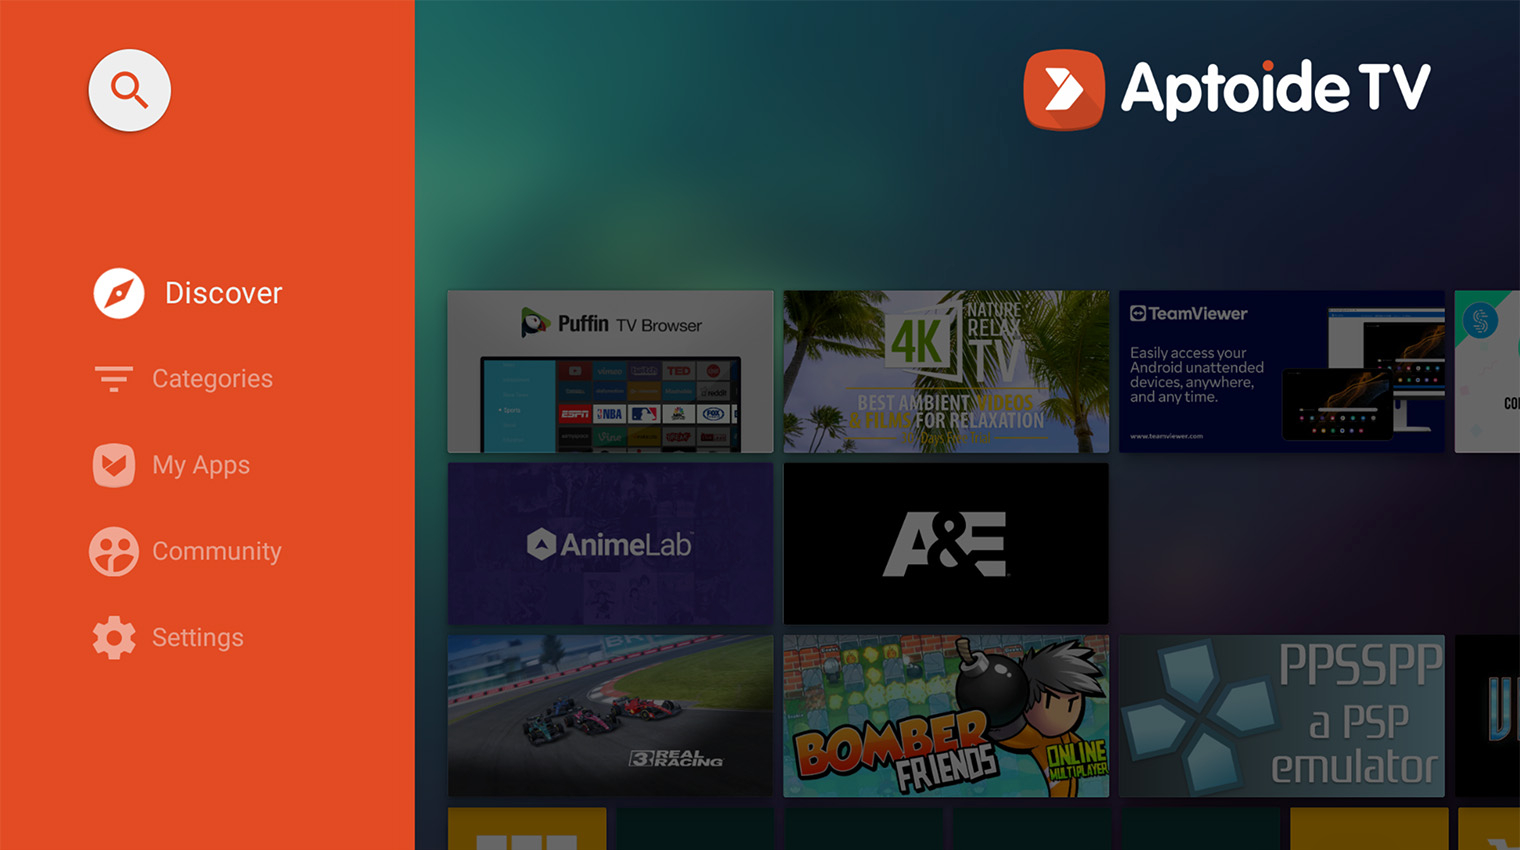 Альтернативный магазин Aptoide TV позволяет устанавливать программы вроде эмуляторов ретроконсолей, которые в Google Play обычно не пропускают